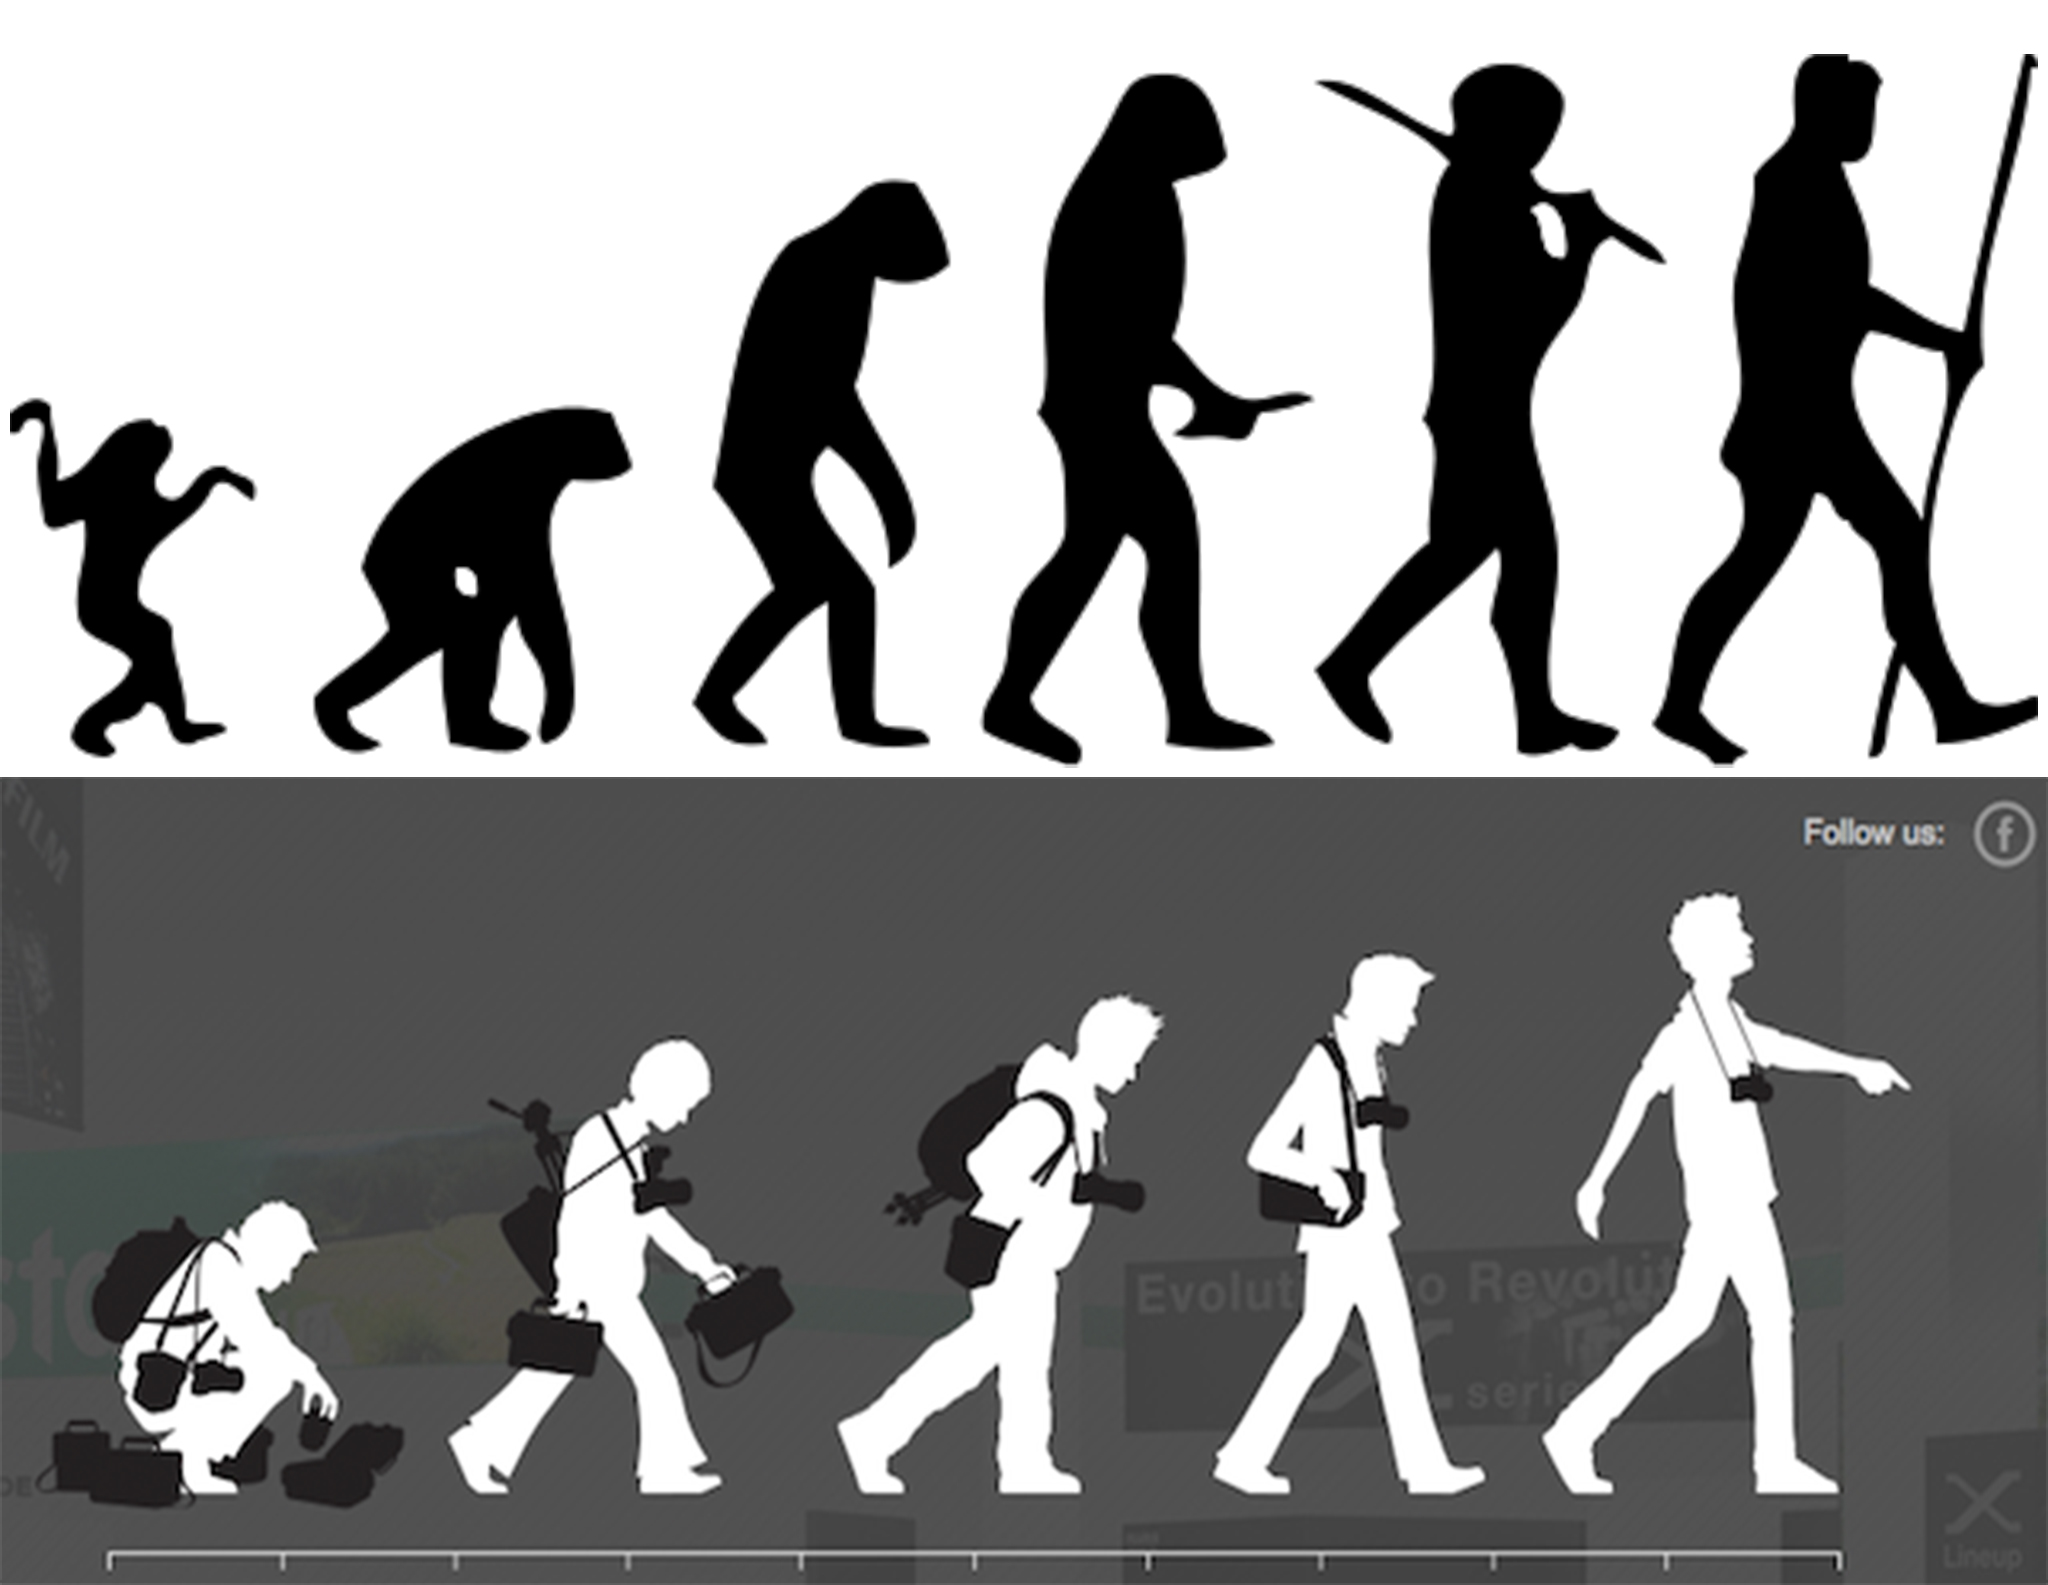 Human_evolution_scheme.jpg